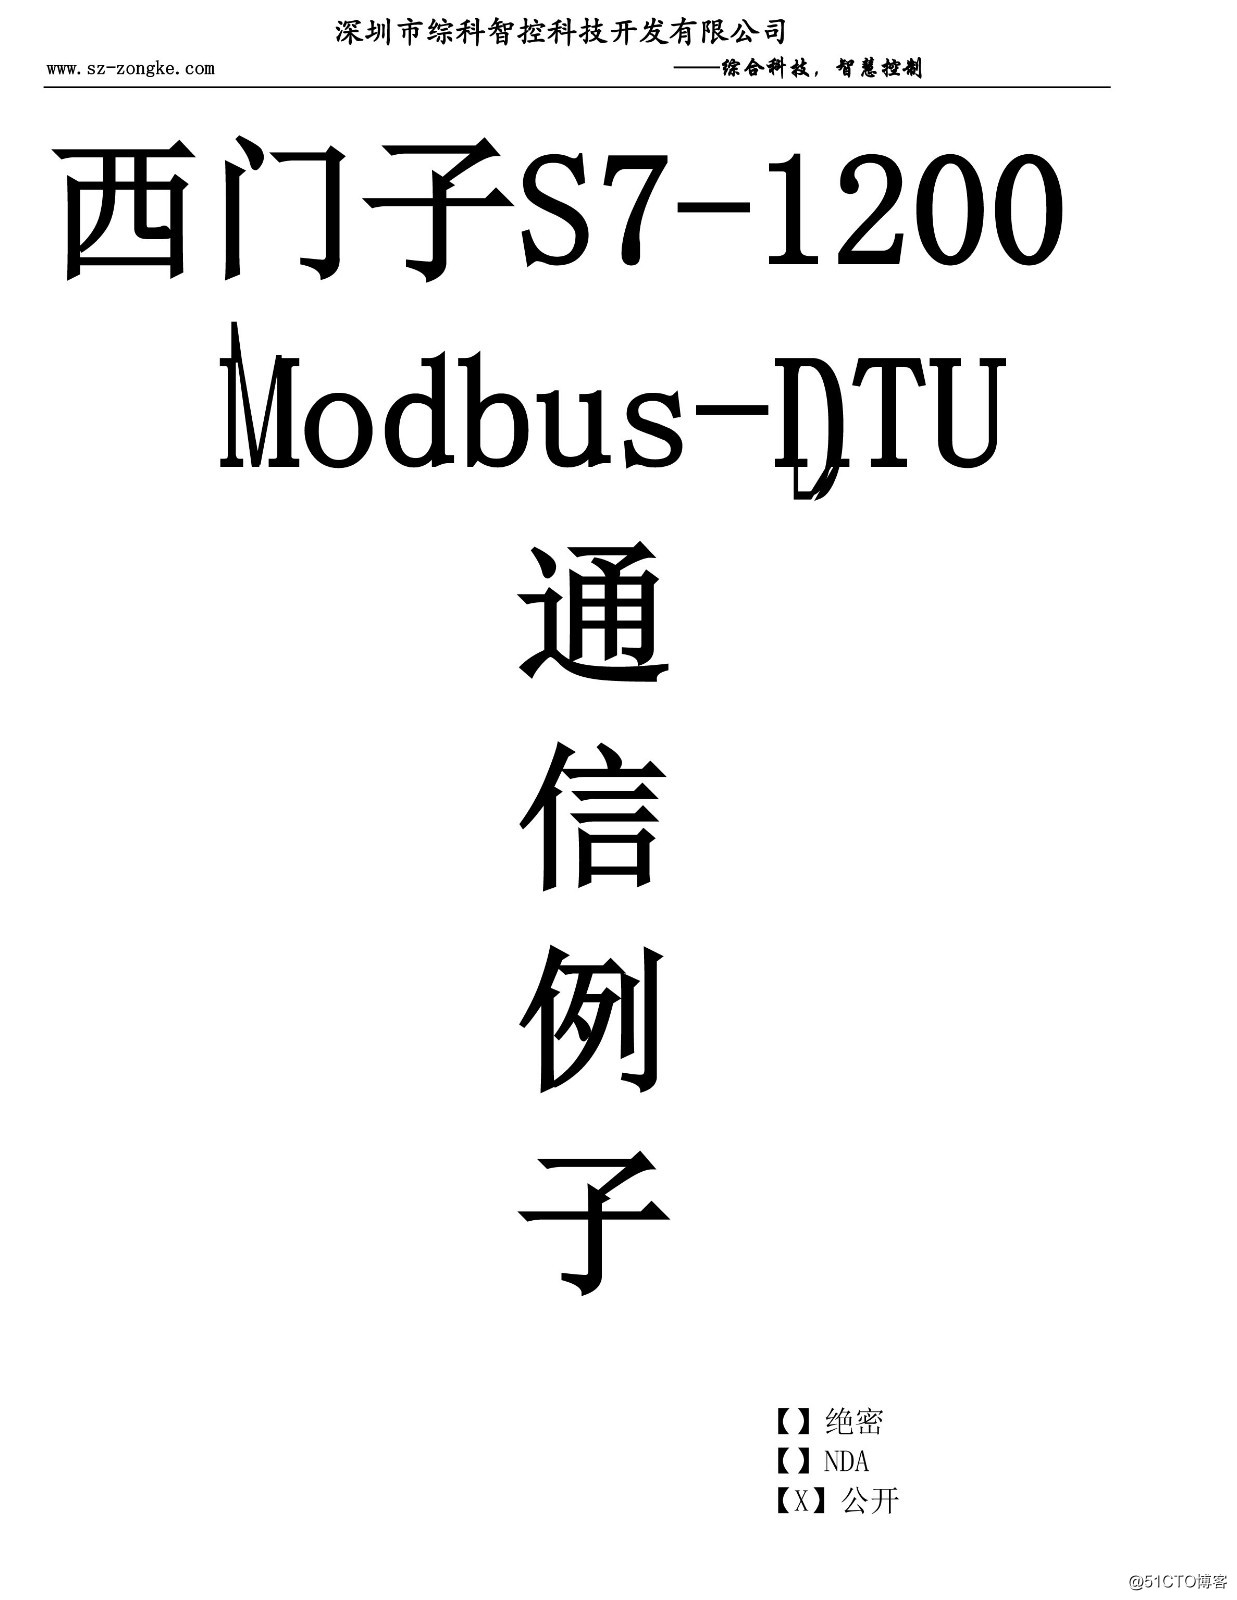 西门子PLC s7-1200 1500 modbus-rtu通信实例编程详细指导